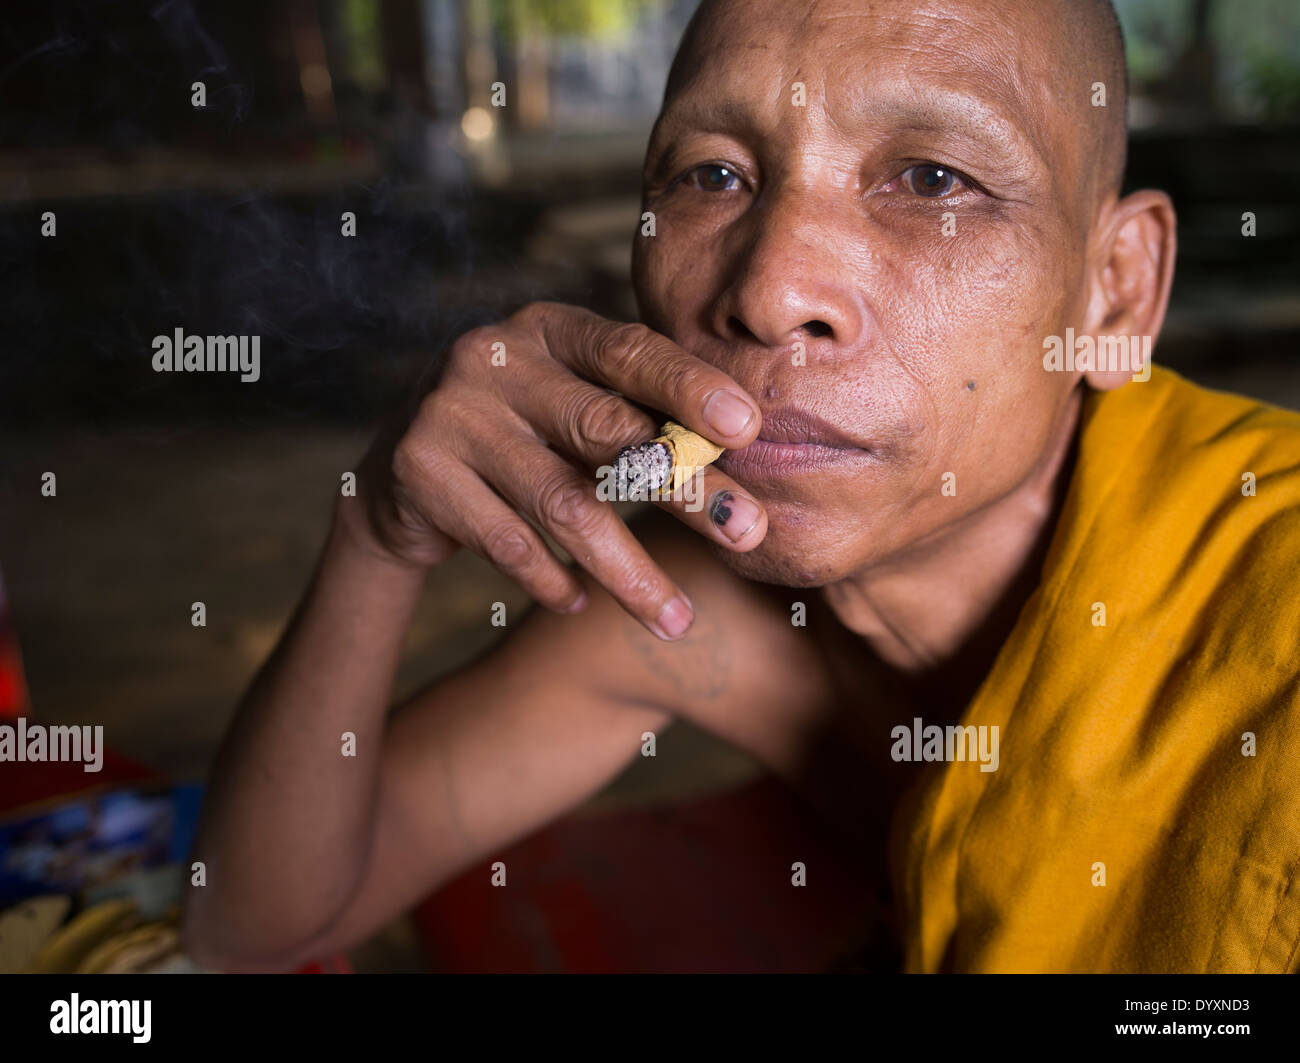 Moine bouddhiste cambodgienne fumer un cigare feuille faite avec sankai, feuille à côté de temple Bayon, Angkor Thom, Siem Reap, Cambodge Banque D'Images